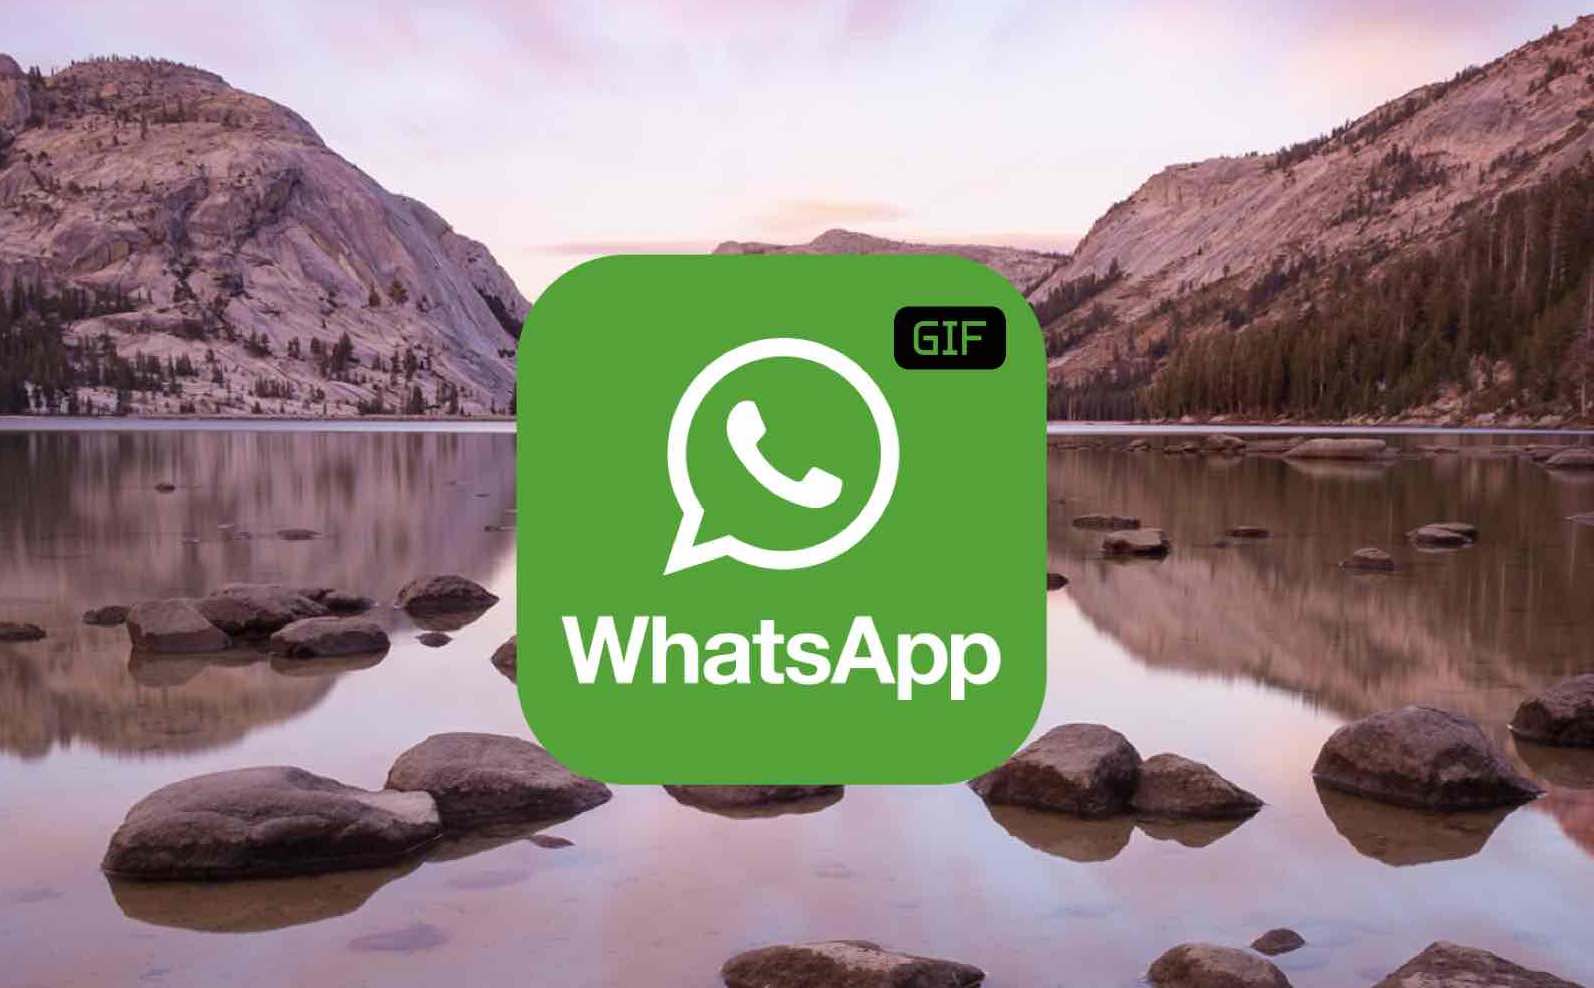 enviar gif whatsapp iphone